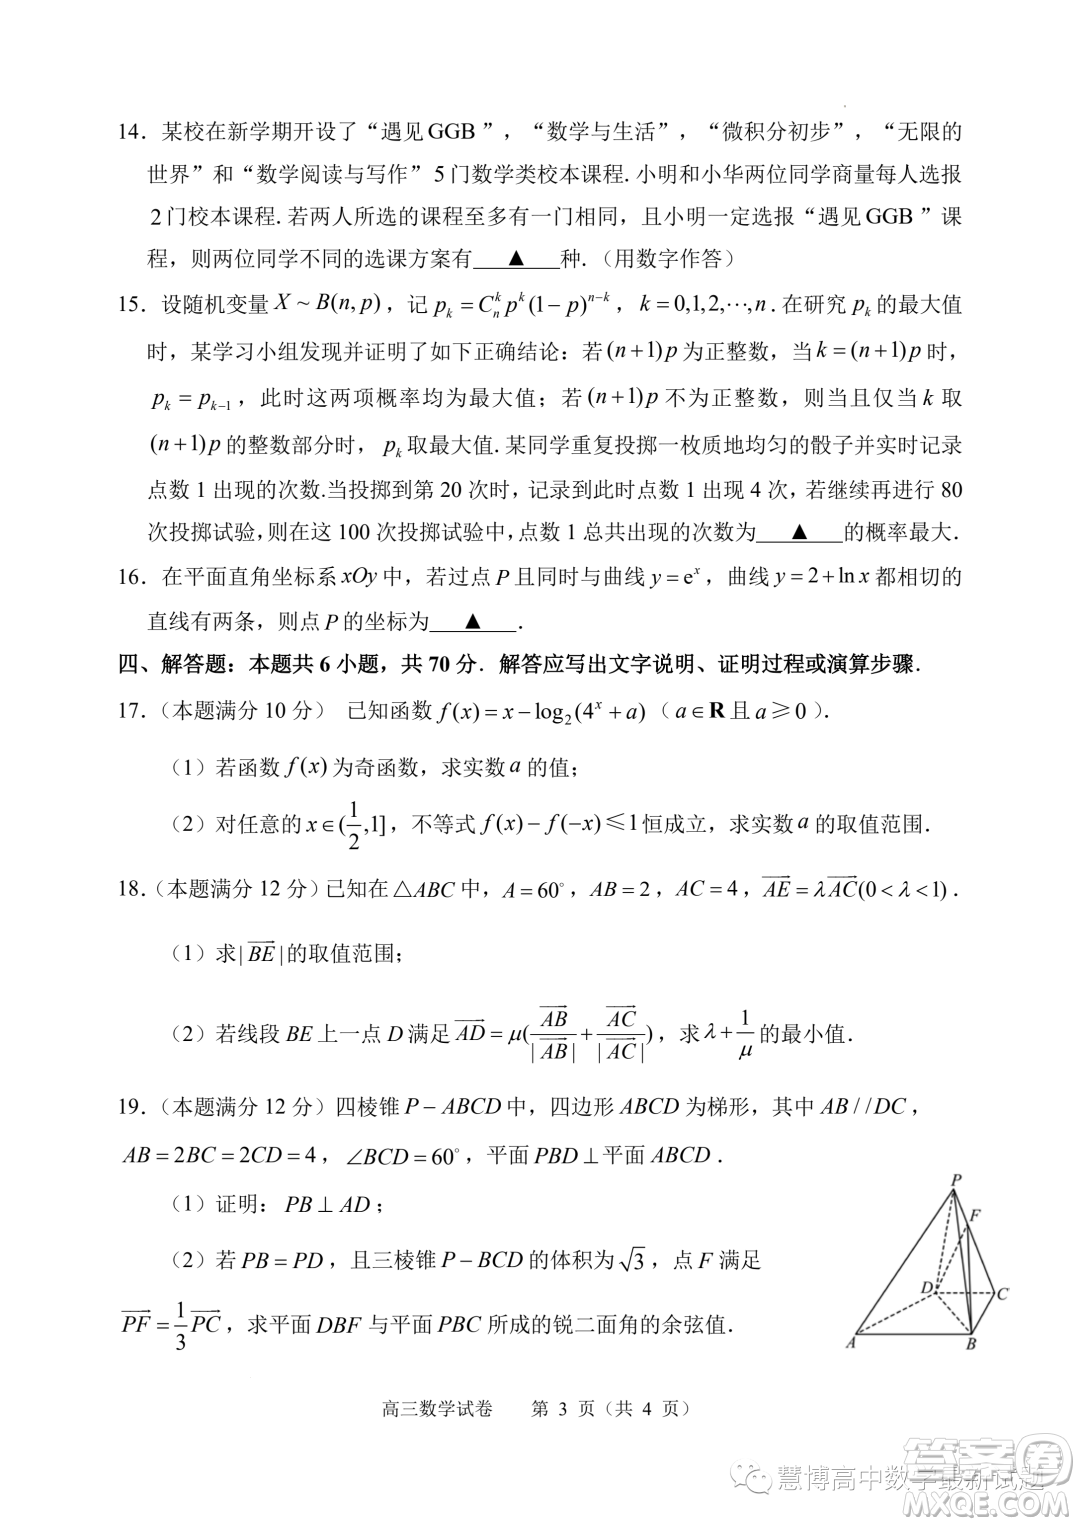 江苏常州高级中学2024届高三上学期期初检测数学试卷答案